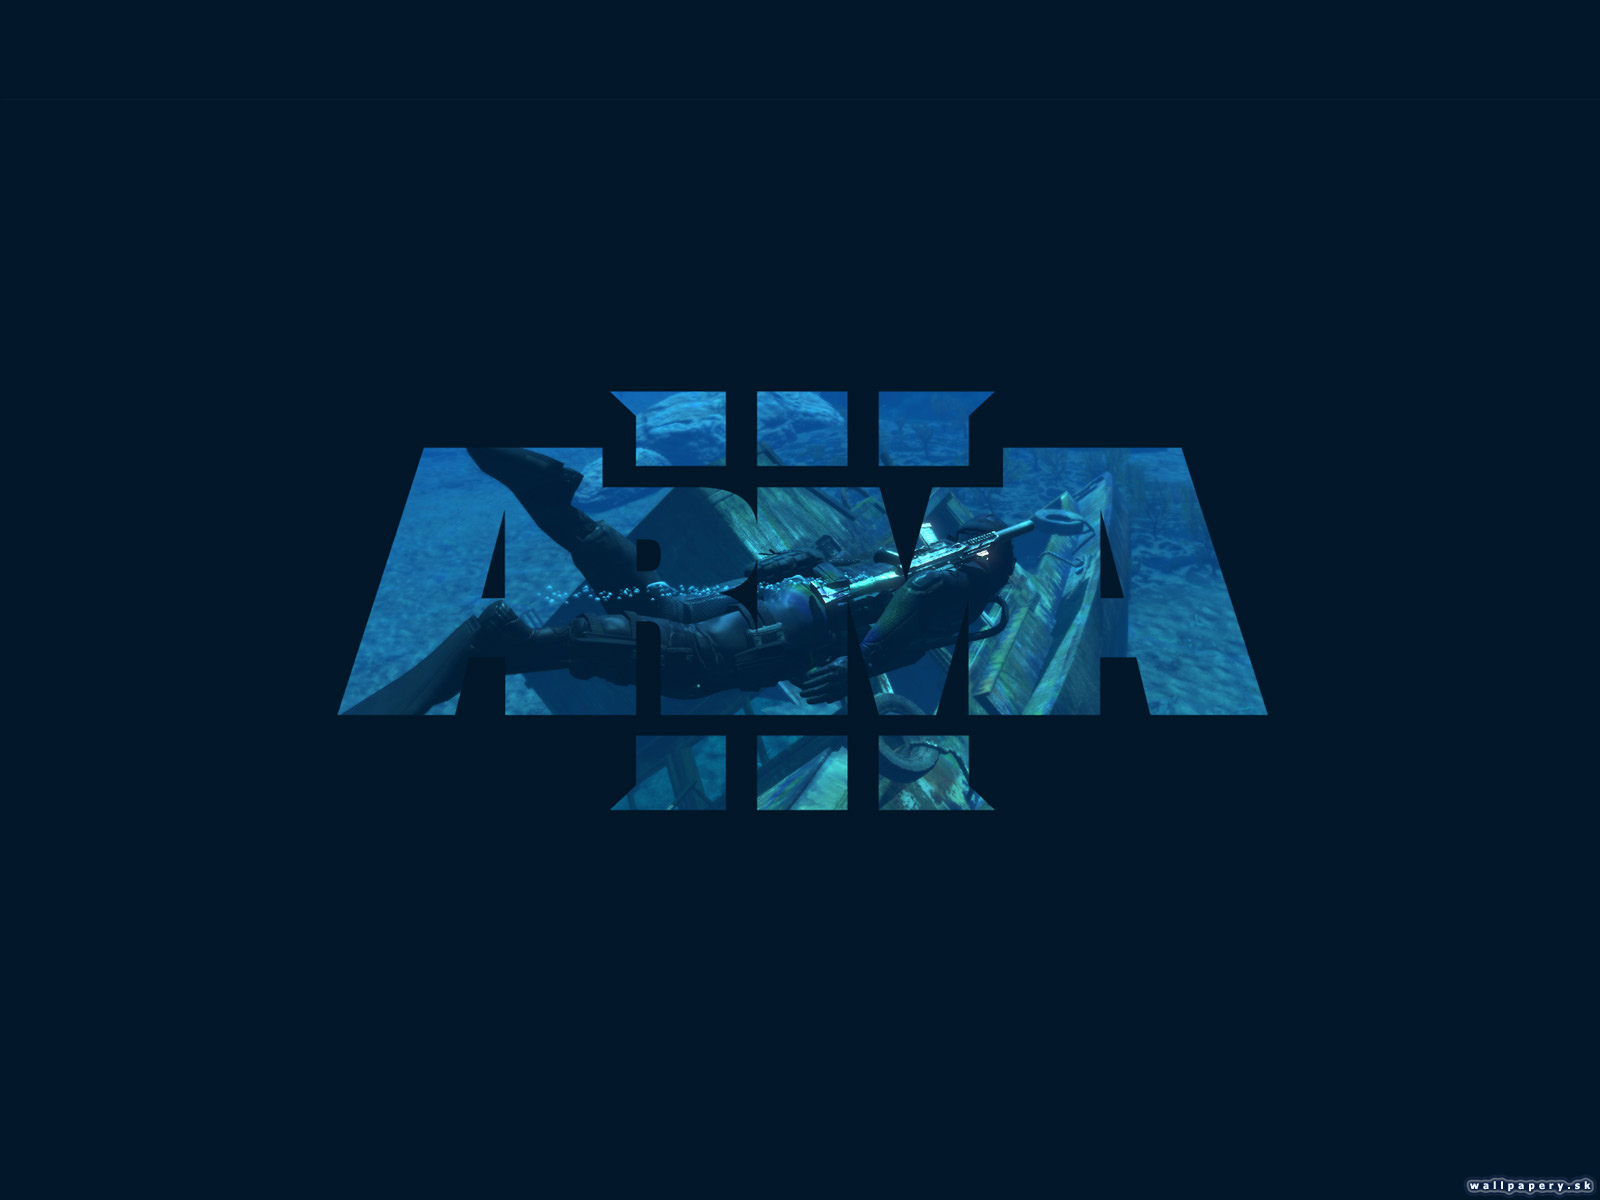 ARMA III - wallpaper 3